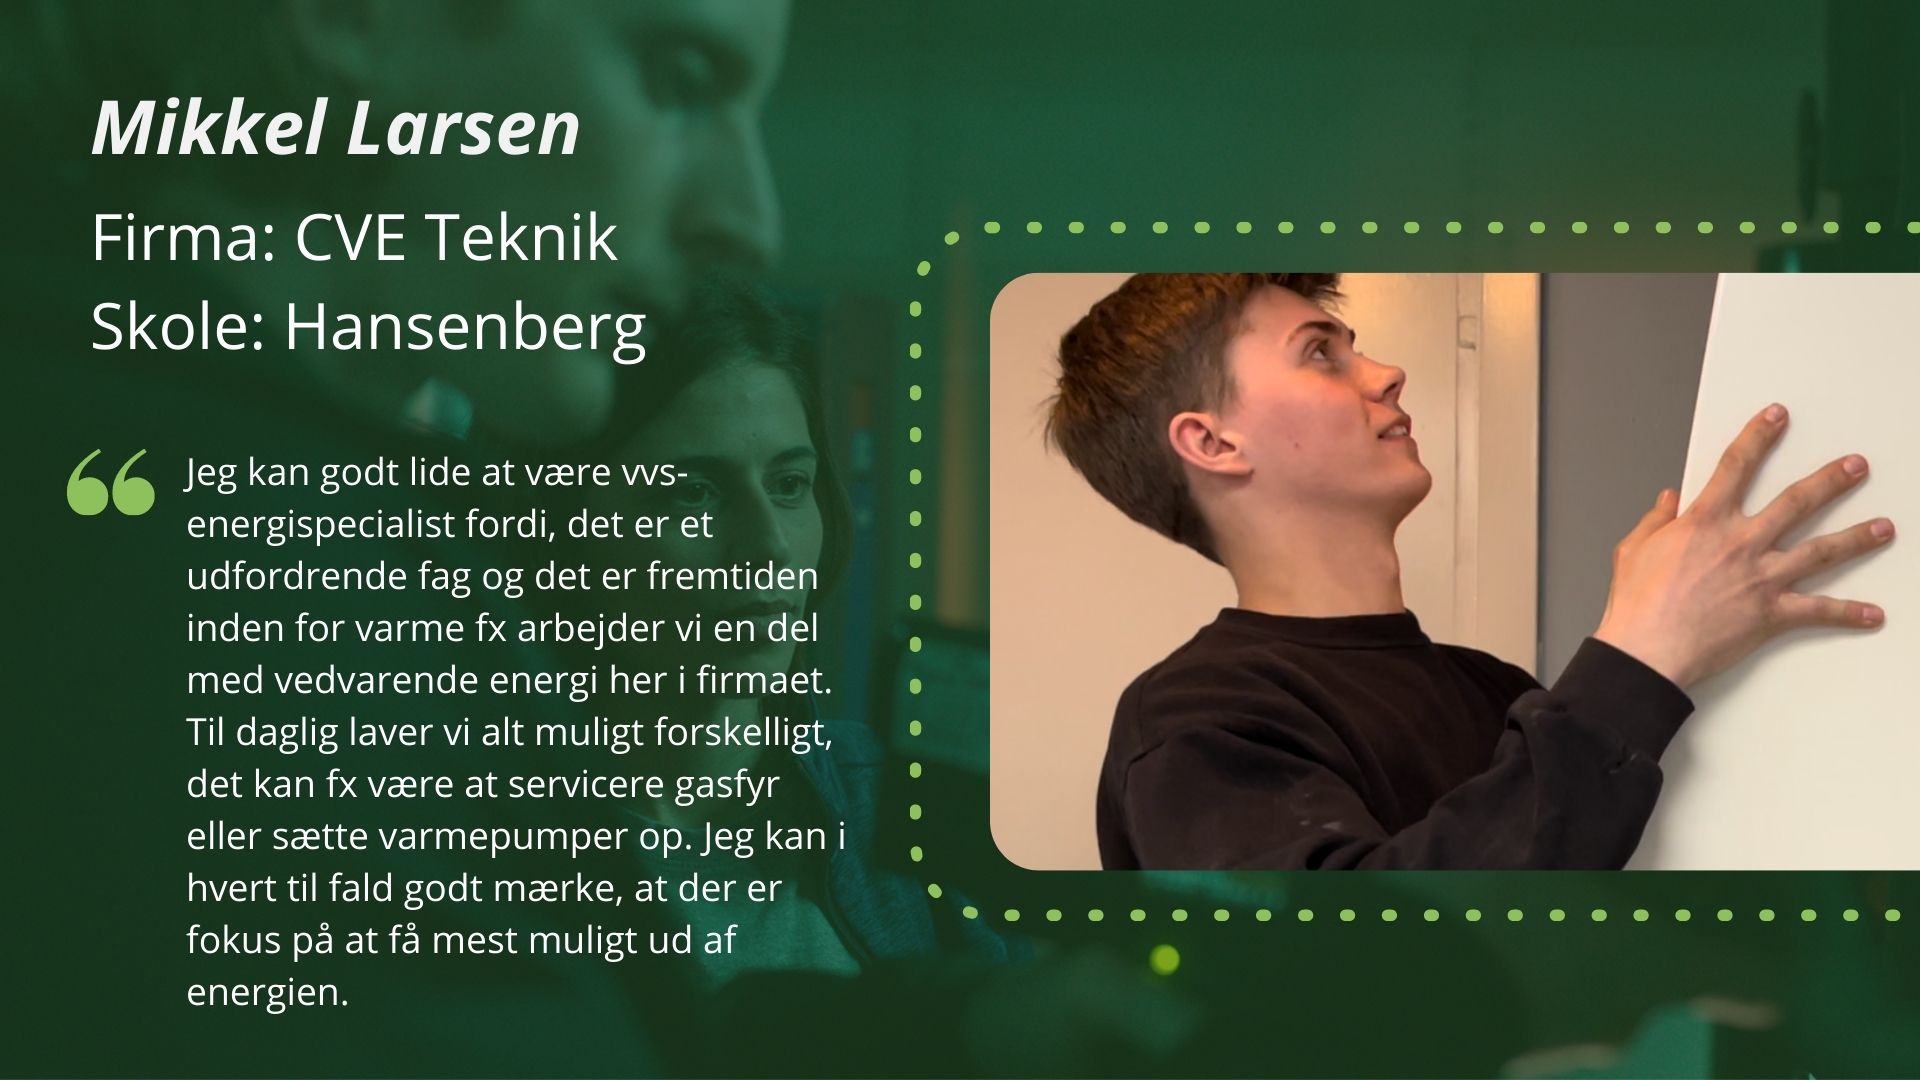 Præsentation af Mikkel Larsen, deltager i DM i Skills for vvs-energiuddannelsen